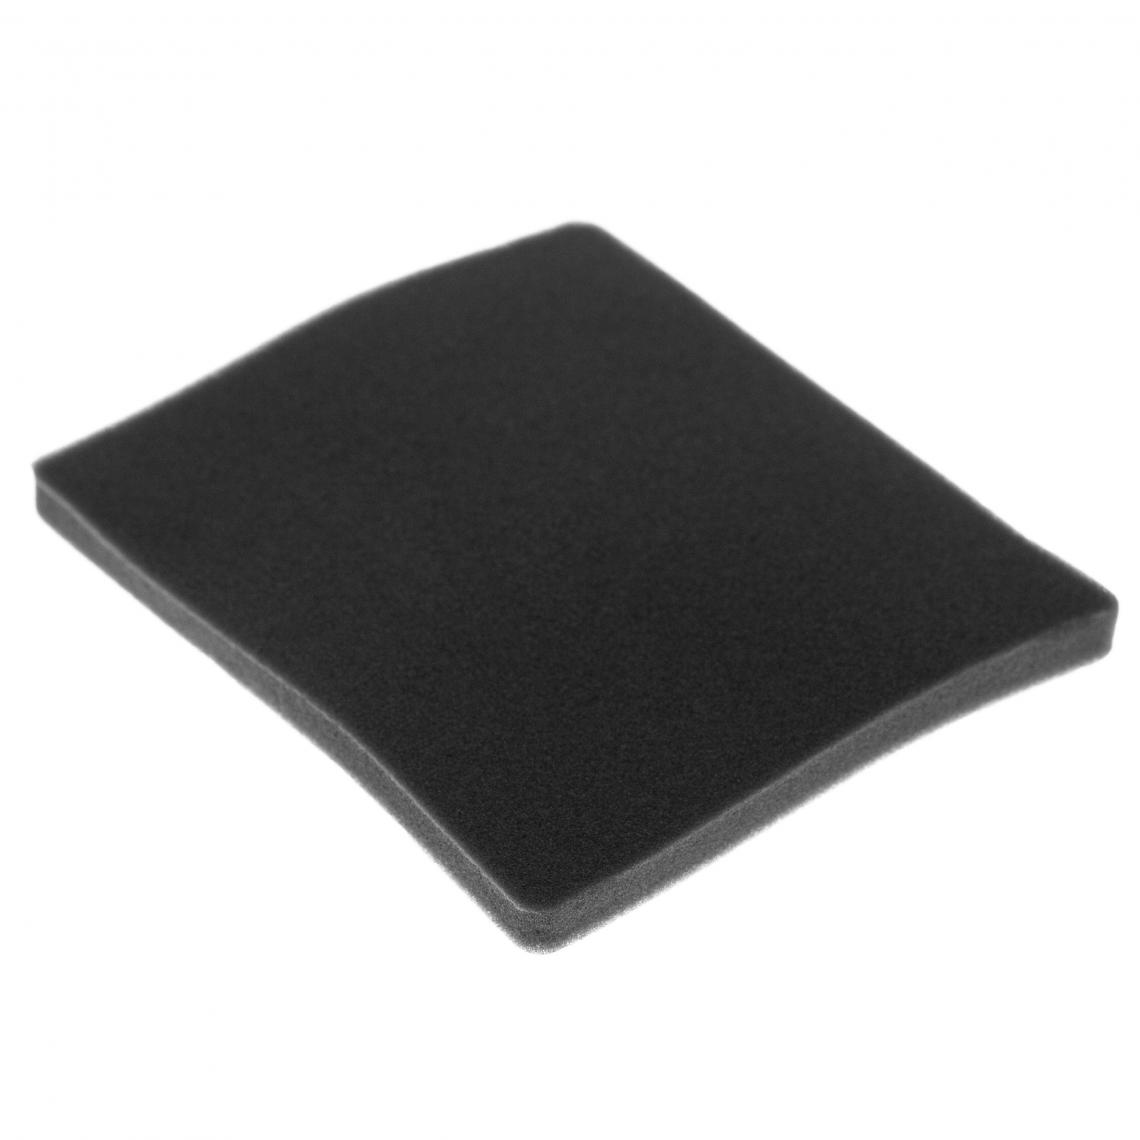 Vhbw - vhbw Filtre compatible avec Electrolux ZCX6203 (910286611) aspirateur - filtre de sortie d'air (filtre éponge), noir - Accessoire entretien des sols